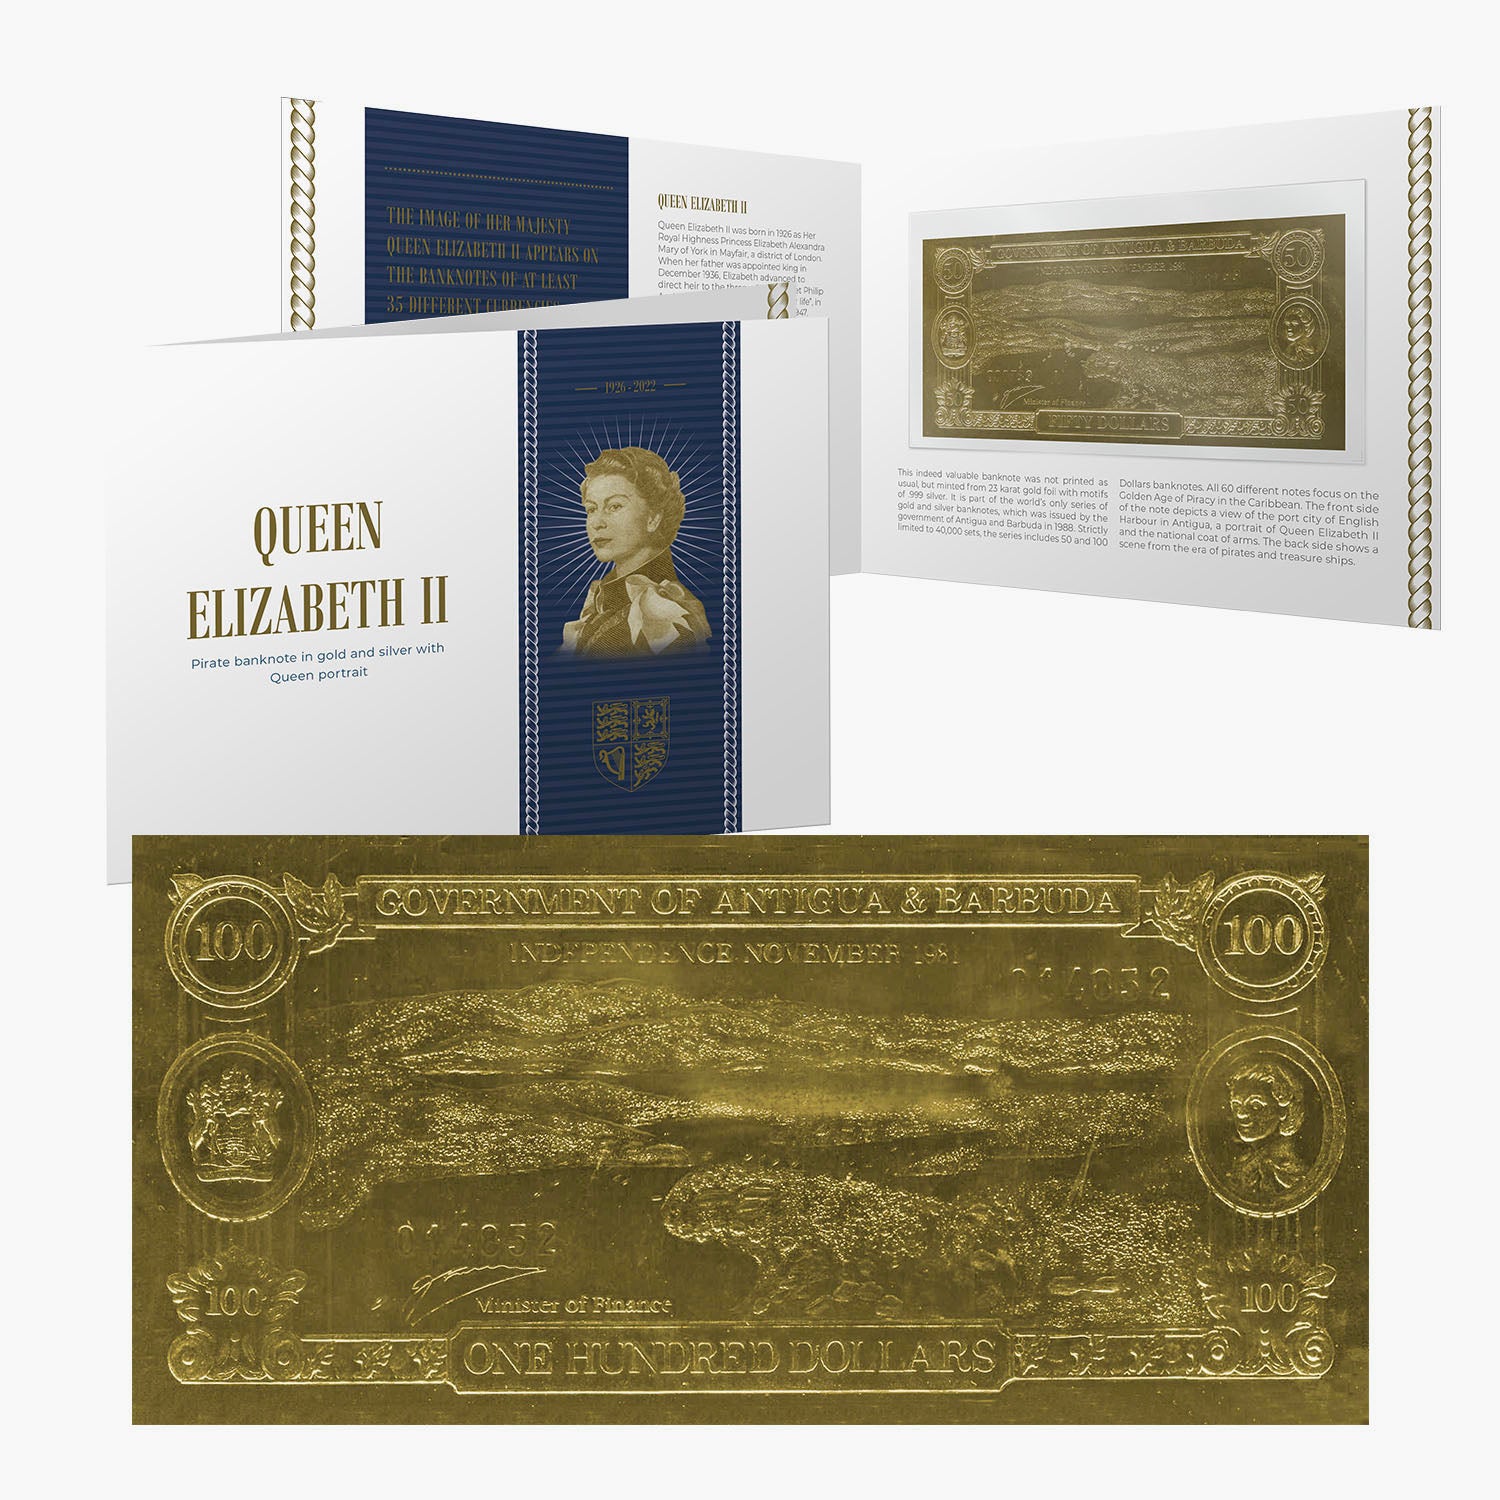 Billet de banque royal en or et en argent de Sa Majesté la reine Elizabeth II